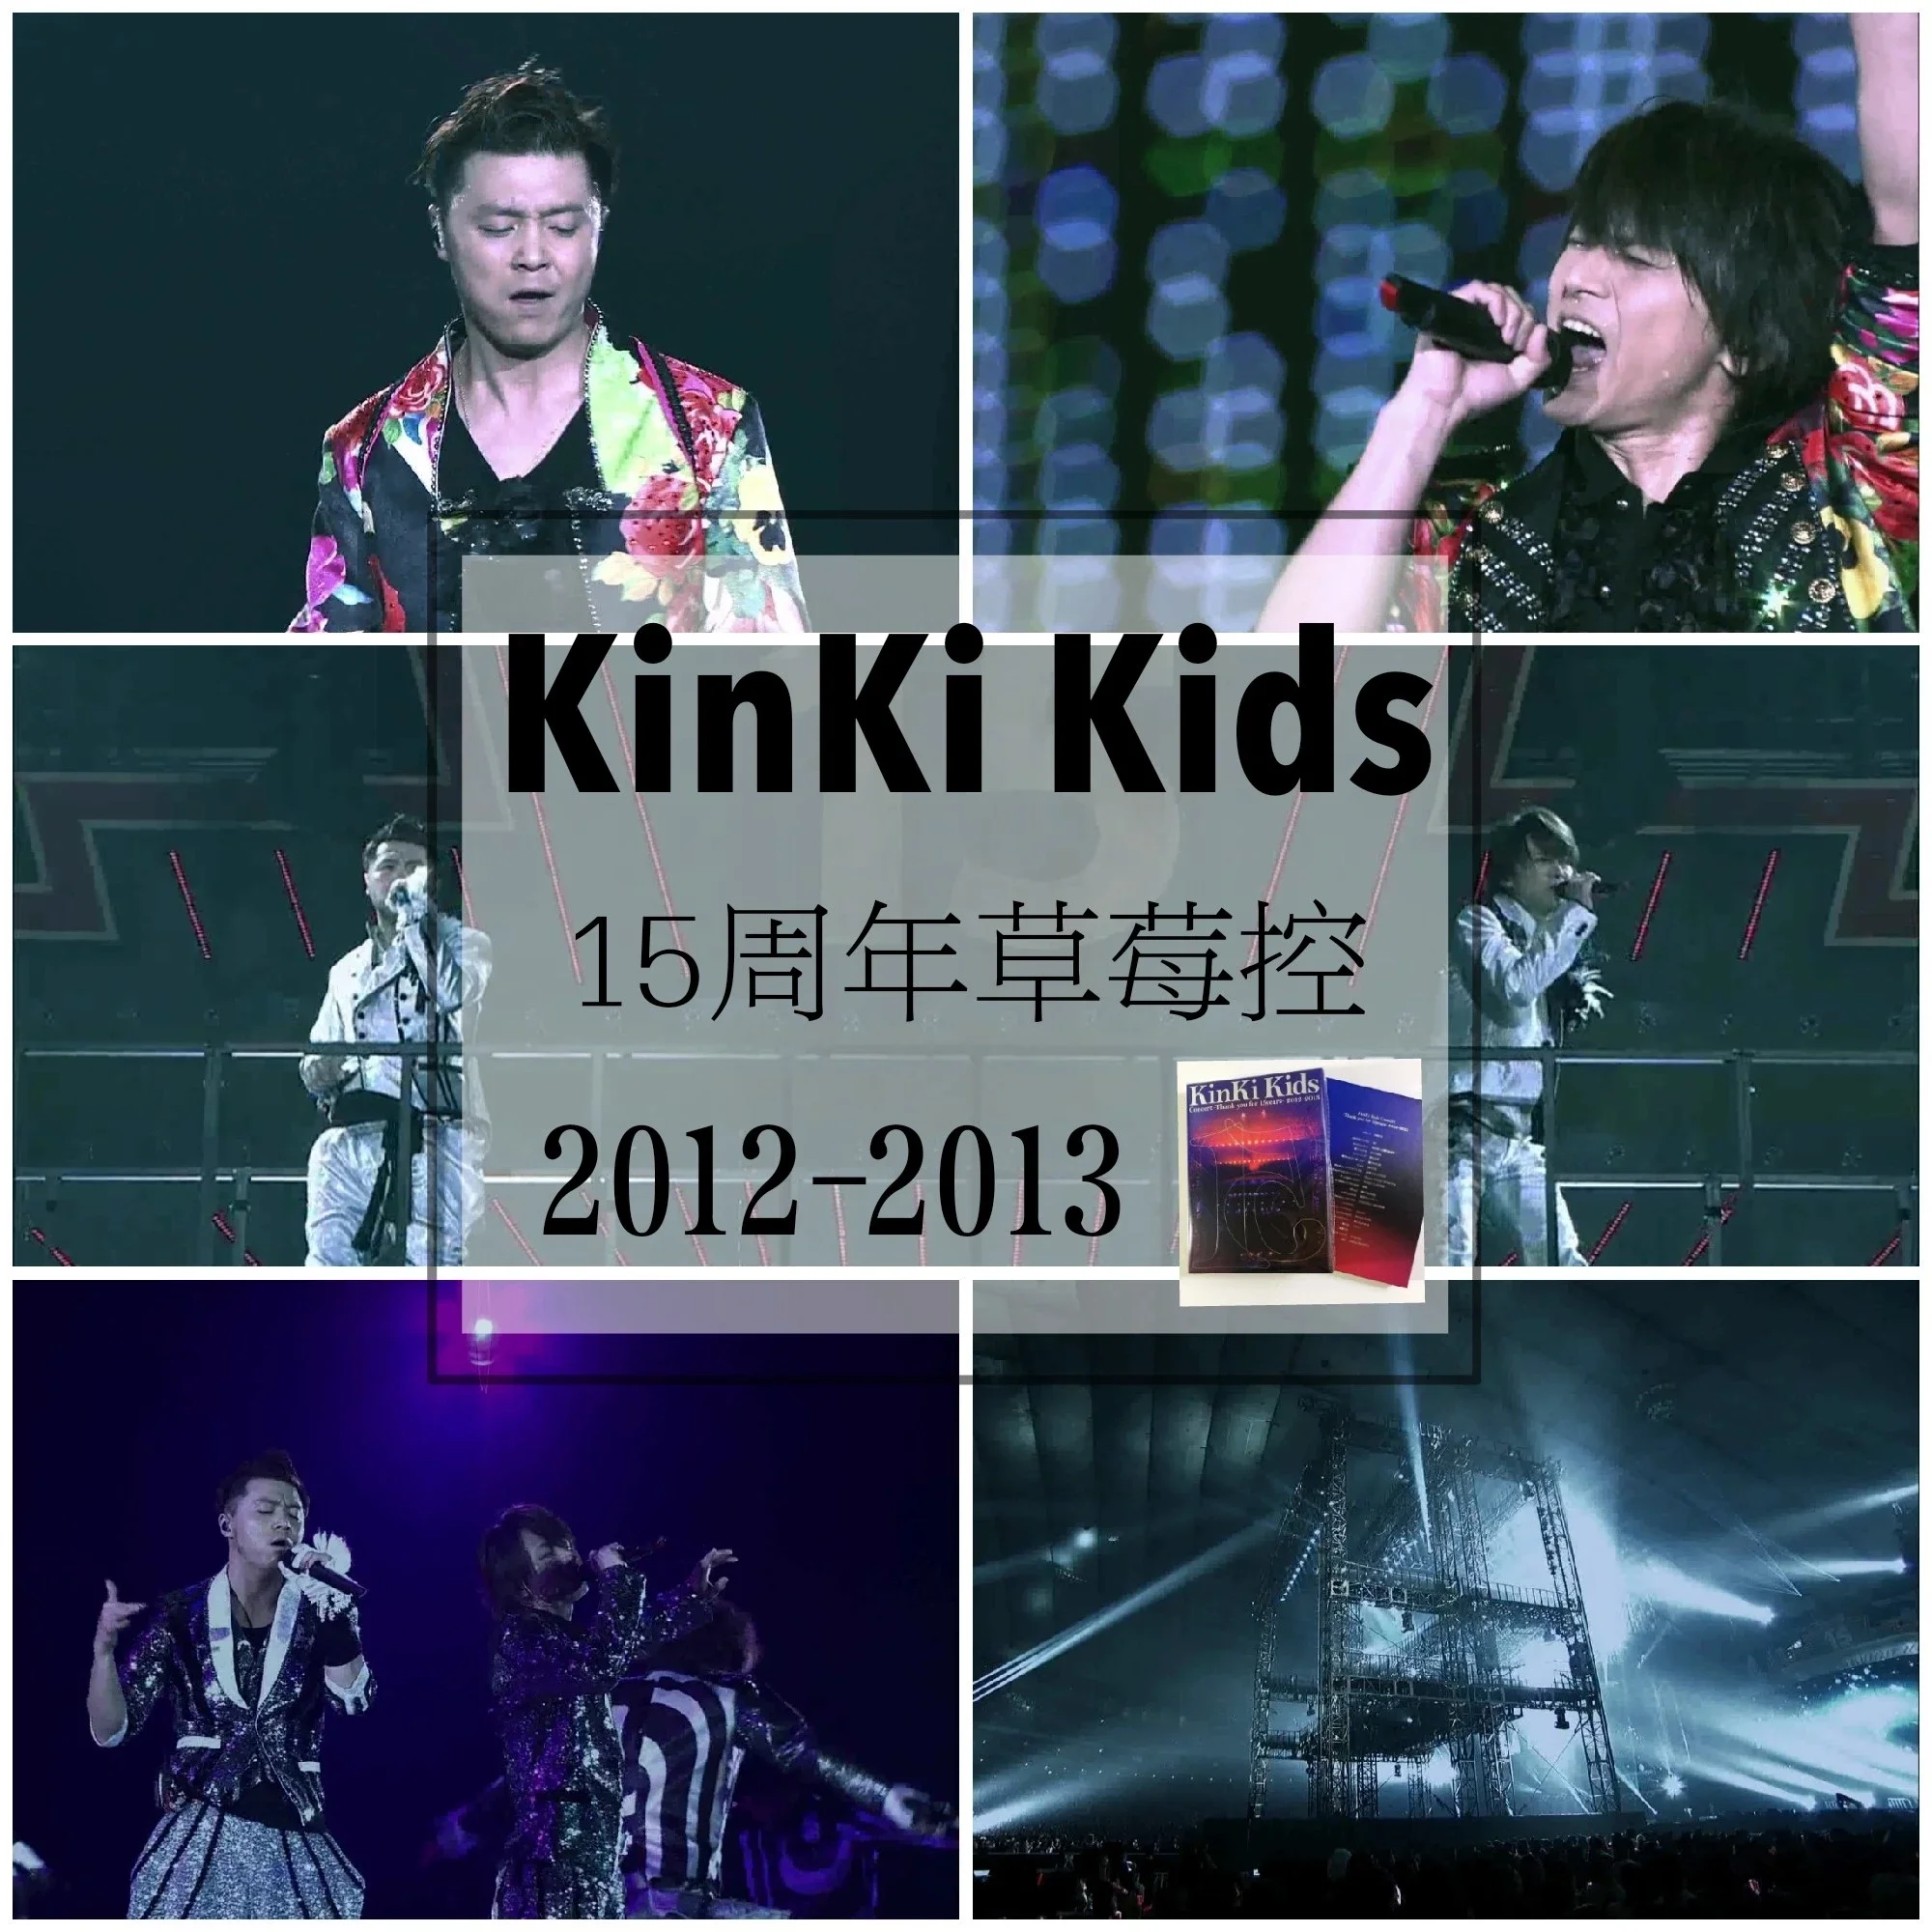 现货】KinKi Kids 草莓控初回Thank you for 15years 2012-2013